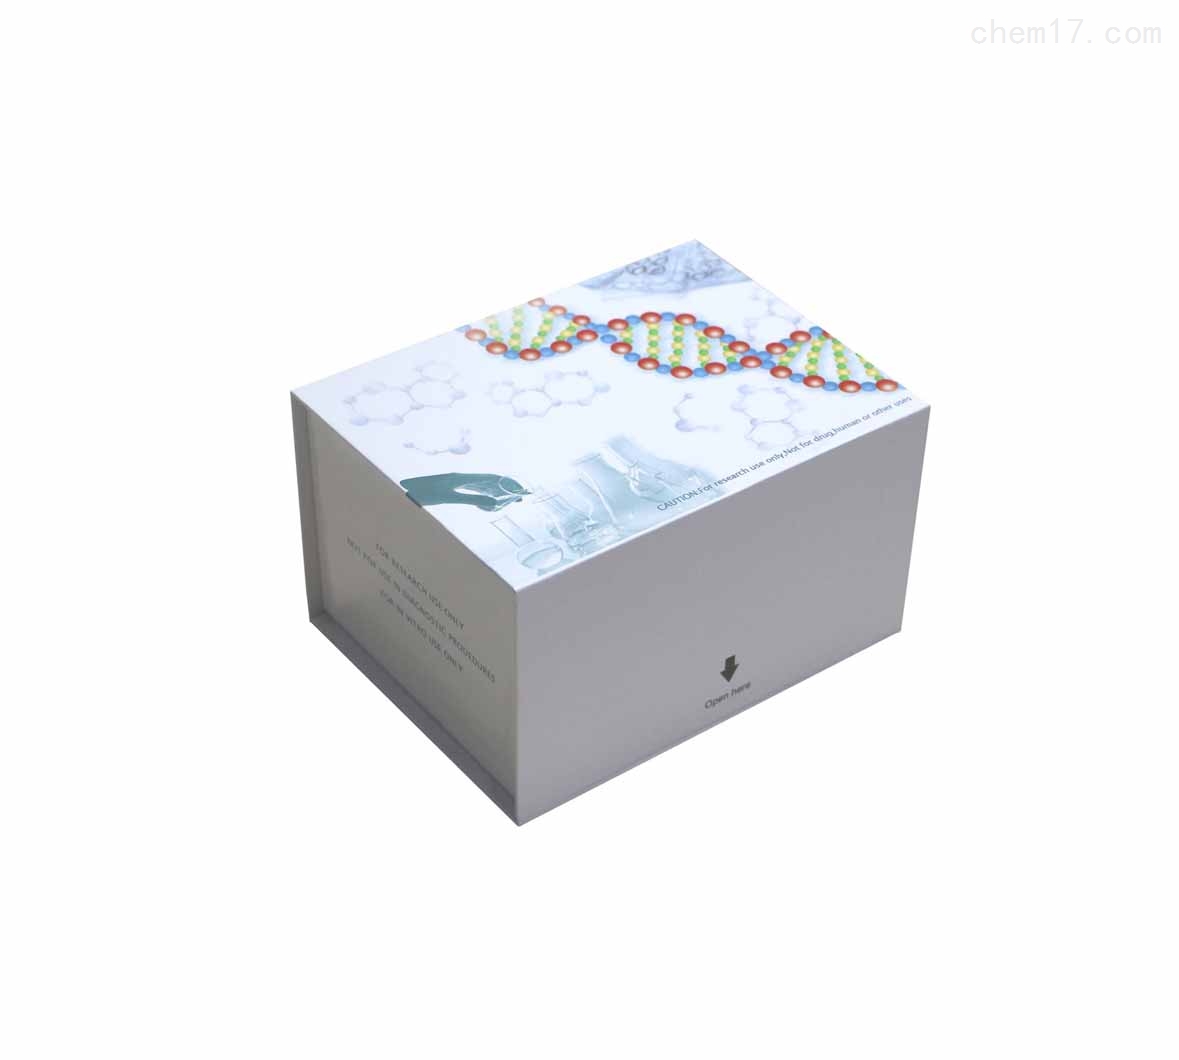 人丙酮酸激酶R型同工酶(RPK)ELISA试剂盒